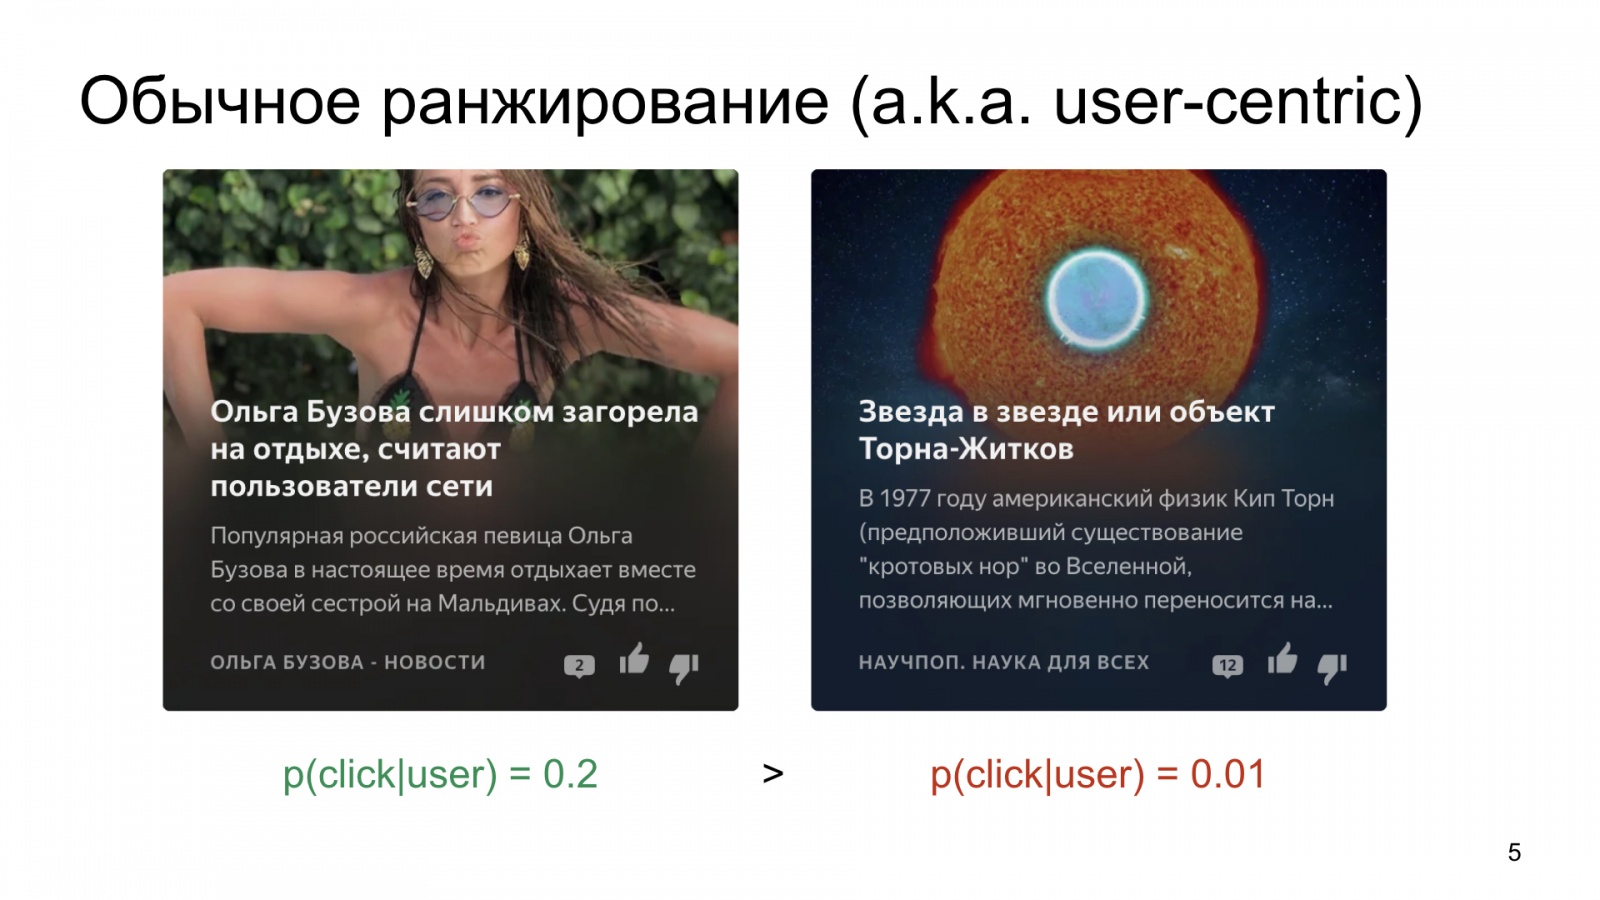 Автороцентричное ранжирование. Доклад Яндекса о поиске релевантной аудитории для авторов Дзена - 5